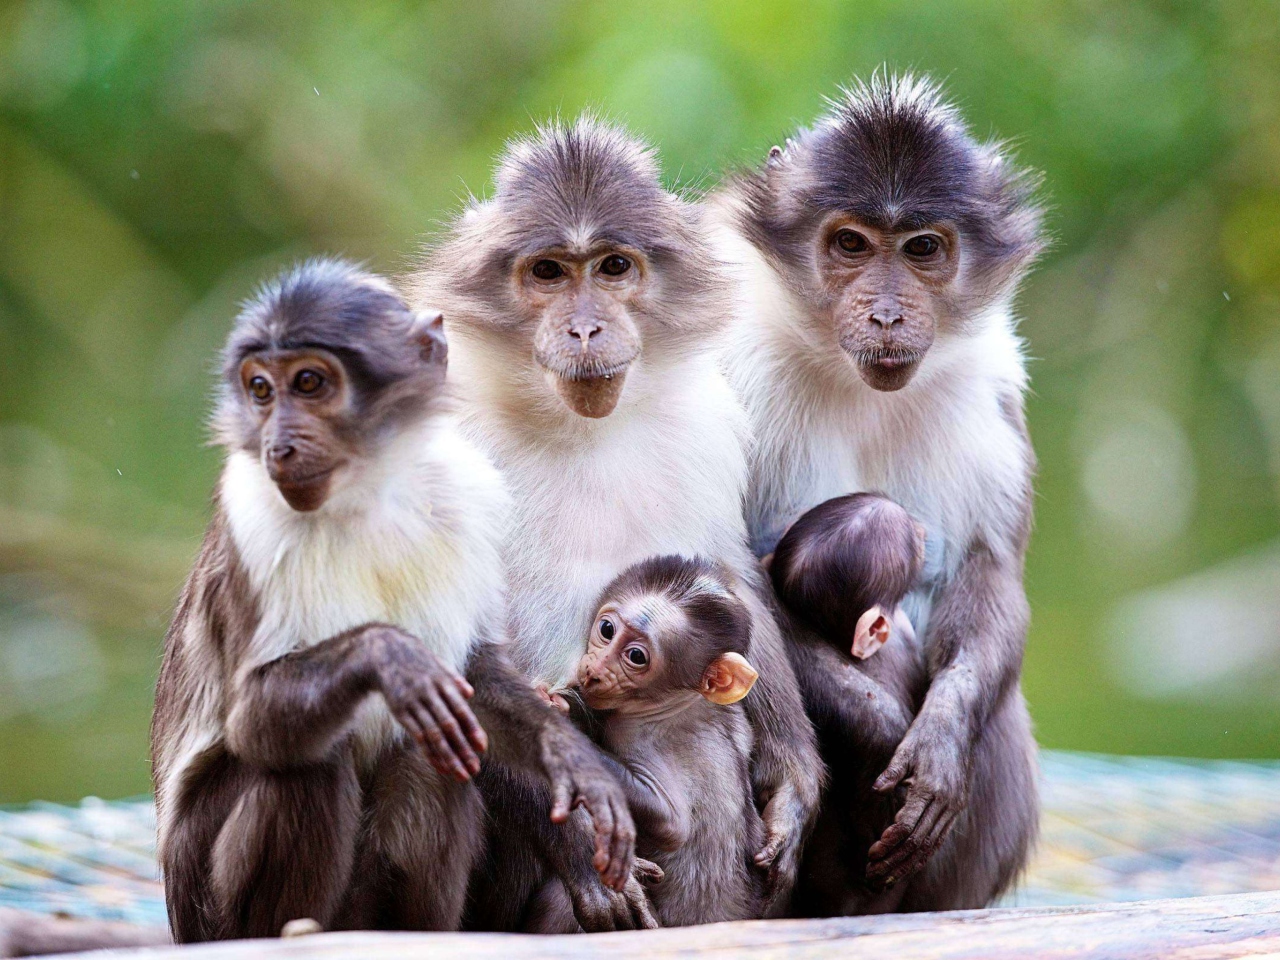 Обои Funny Monkeys With Their Babies 1280x960